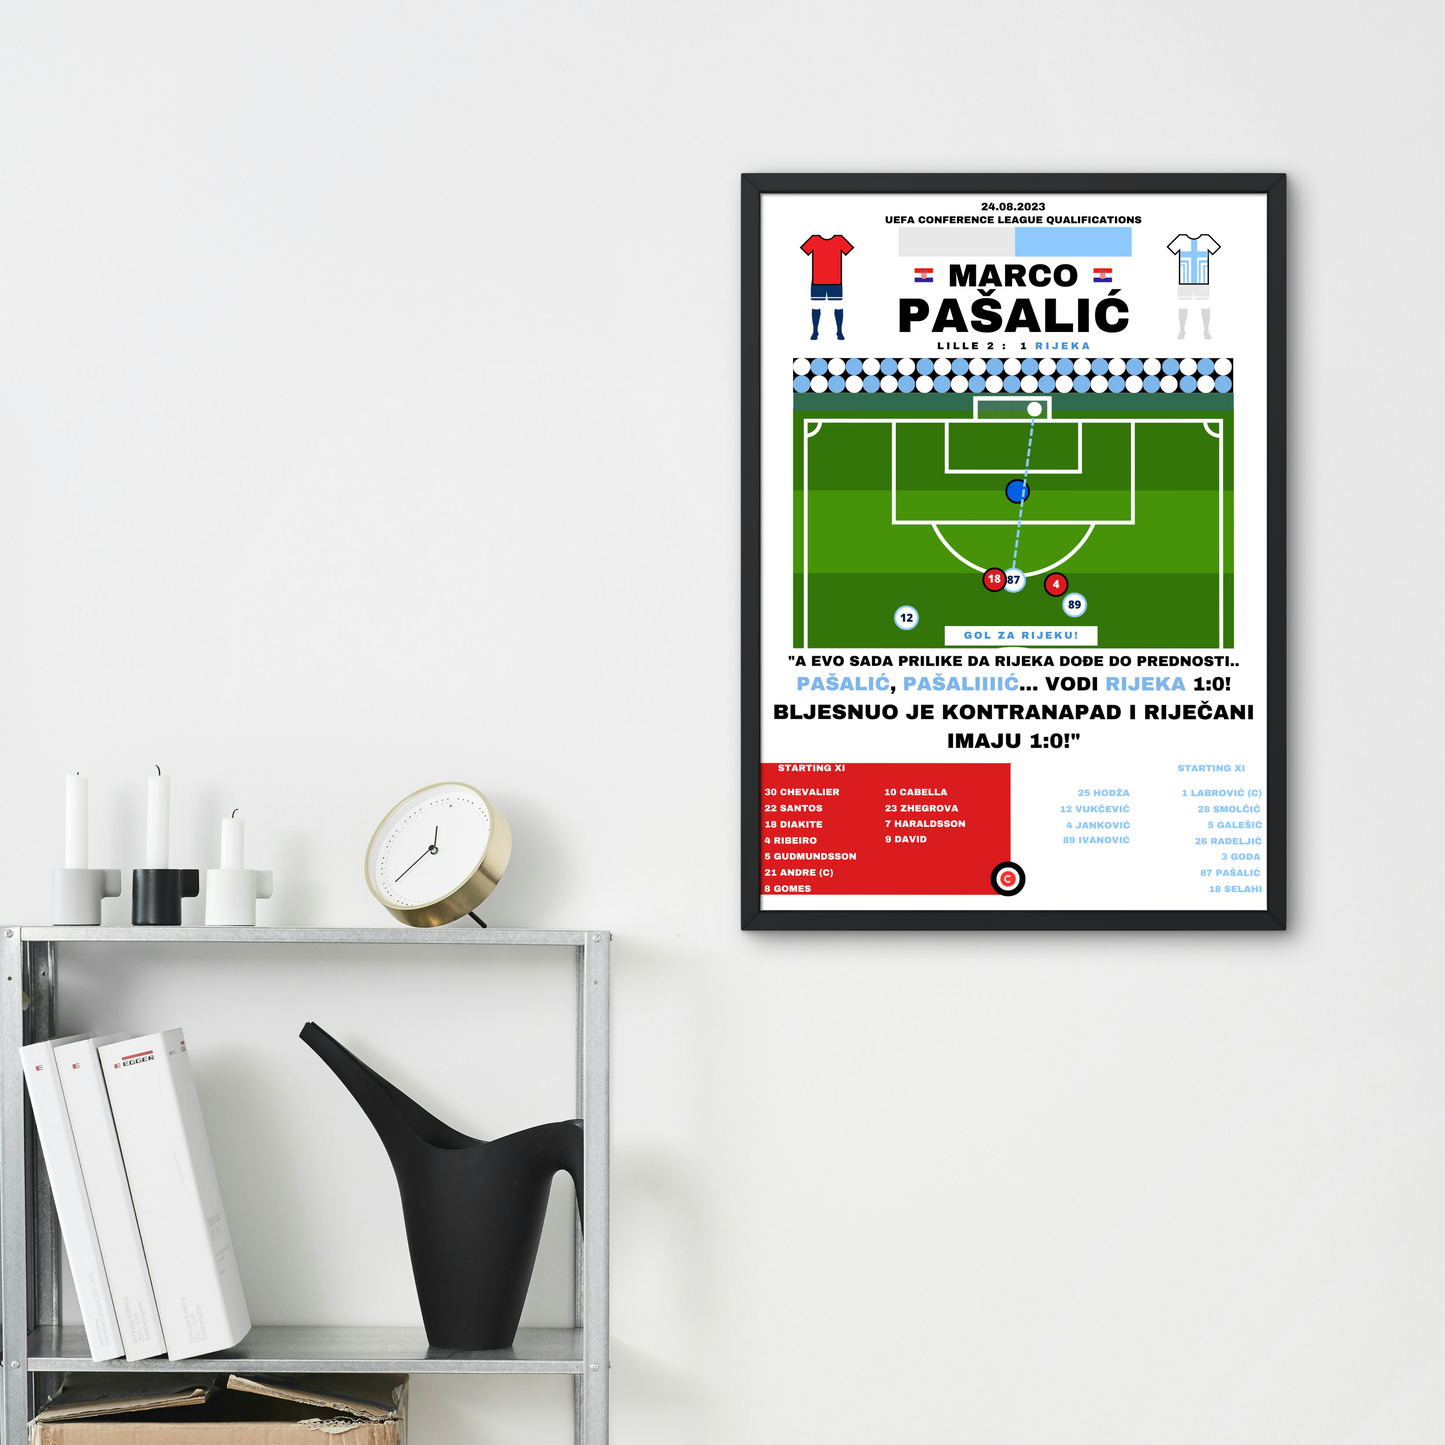 Marco Pašalić Goal vs LOSC Lille- UEFA Conference League Qualification- HNK Rijeka - Premium  from CATENACCIO - Just €14.50! Shop now at CatenaccioDesigns